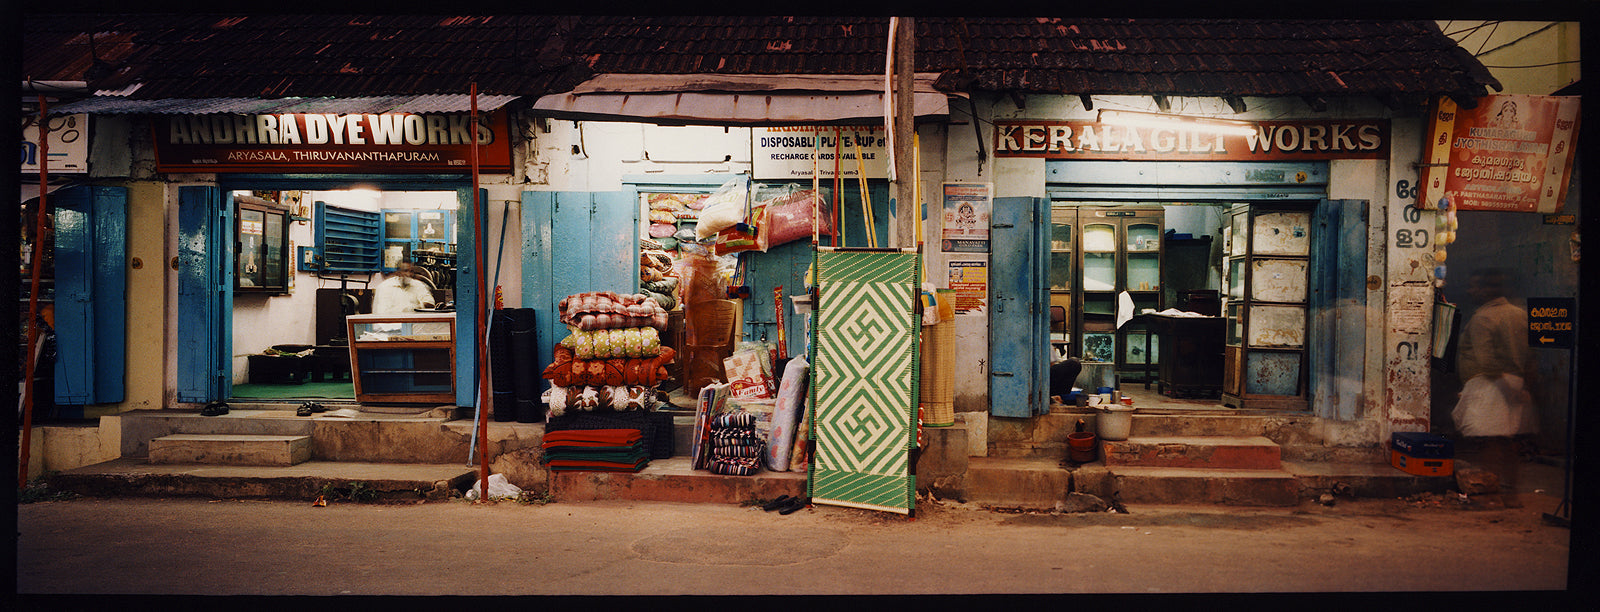 Dye Works, Chalai Market, Thiruvananthapuram, Kerala, 2013